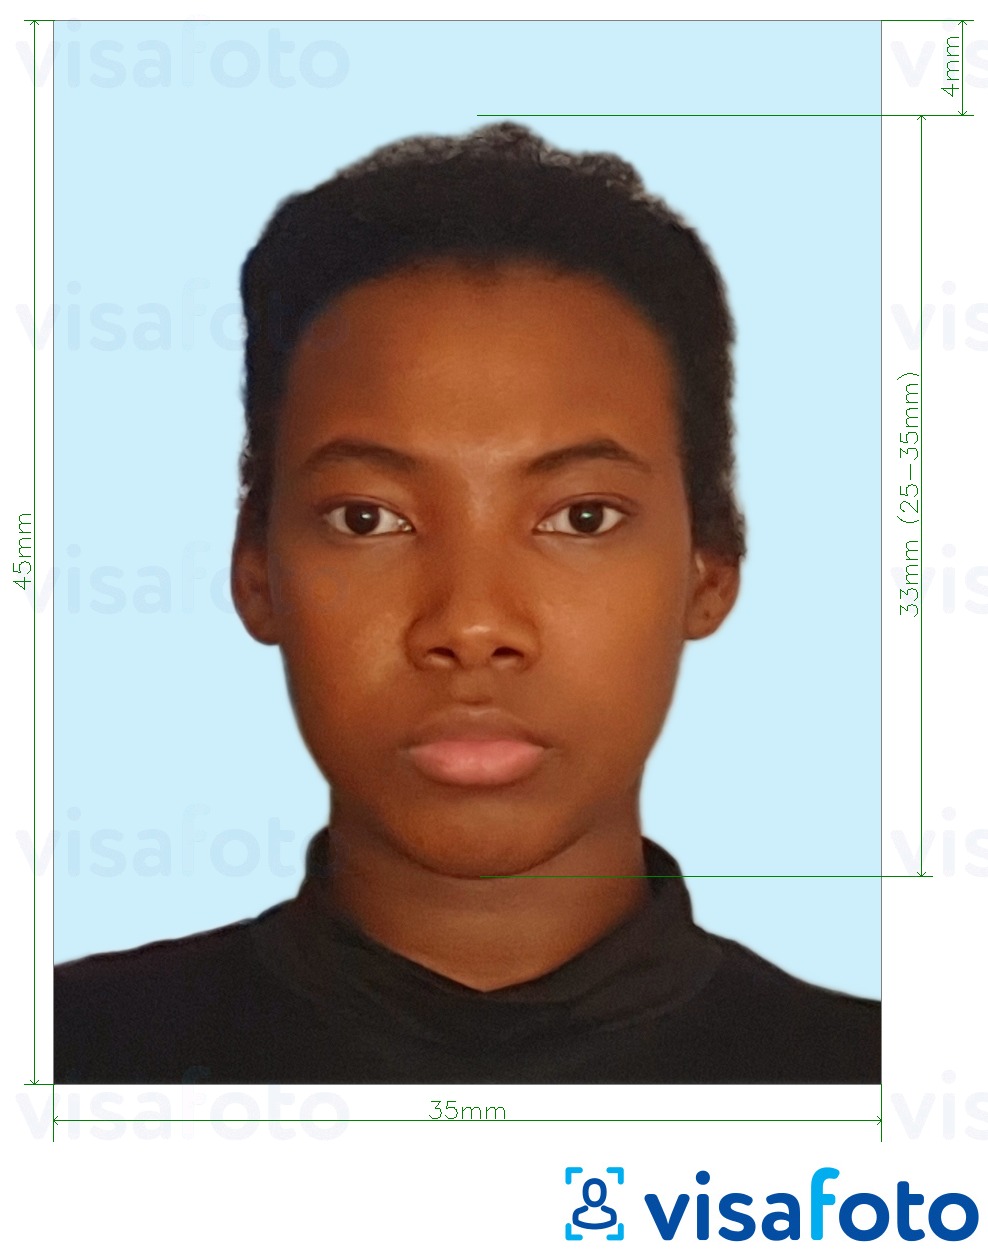 Exemplo de foto para Jamaica passaporte 35x45 mm fundo azul claro com especificação exata de dimensão